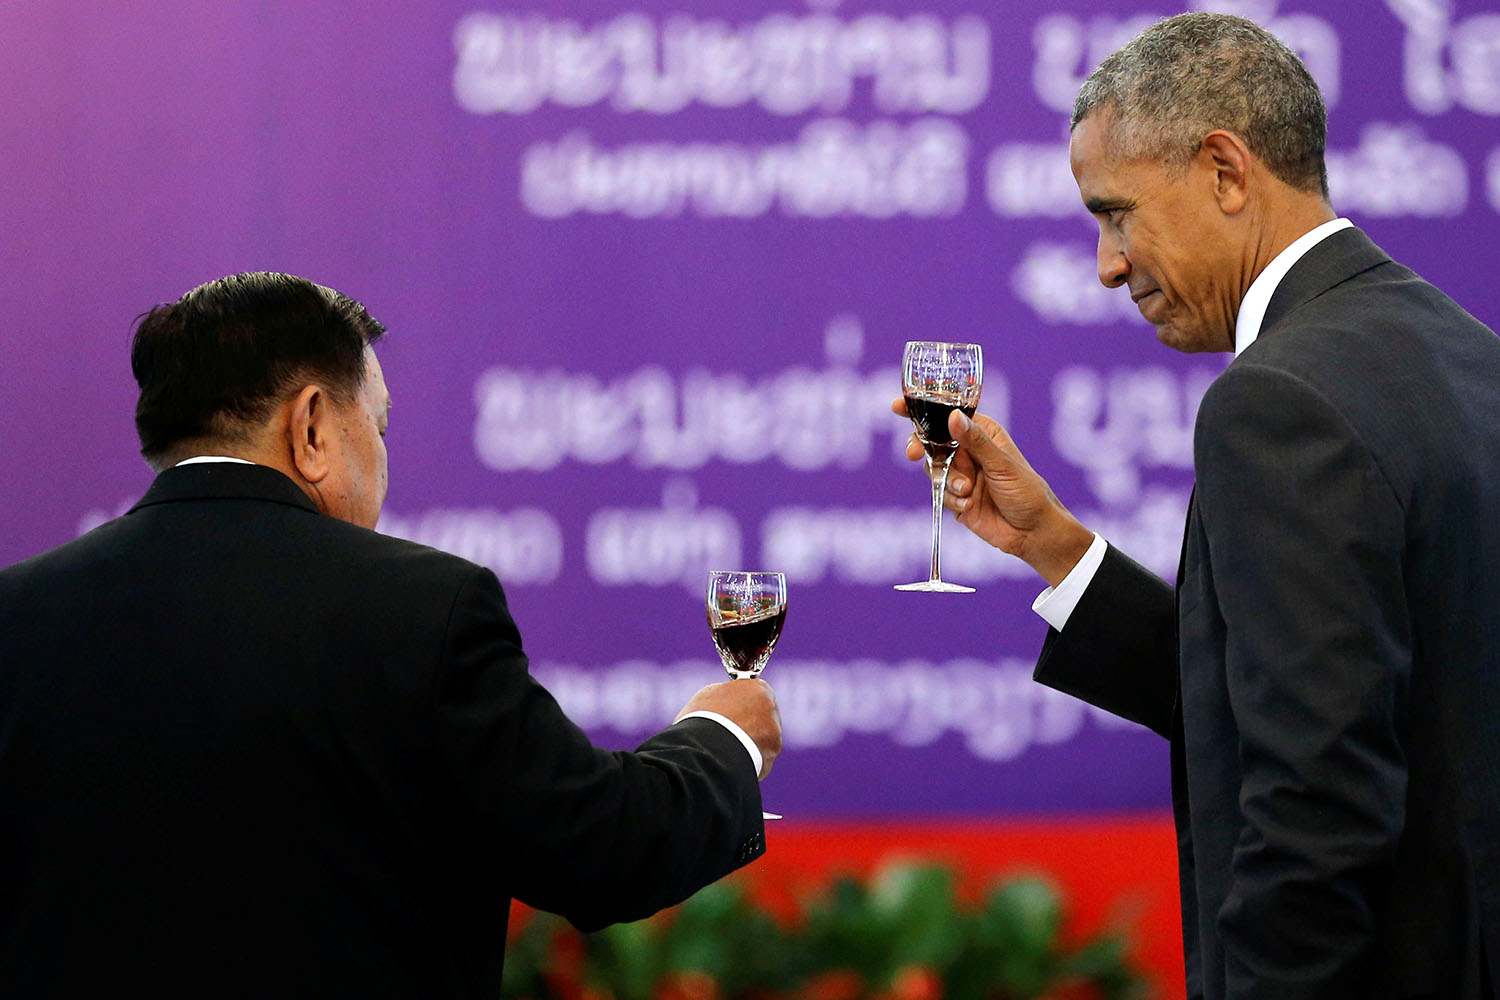 EEUU tiene una "obligación" con Laos, dice Obama en su histórica visita al país asiático